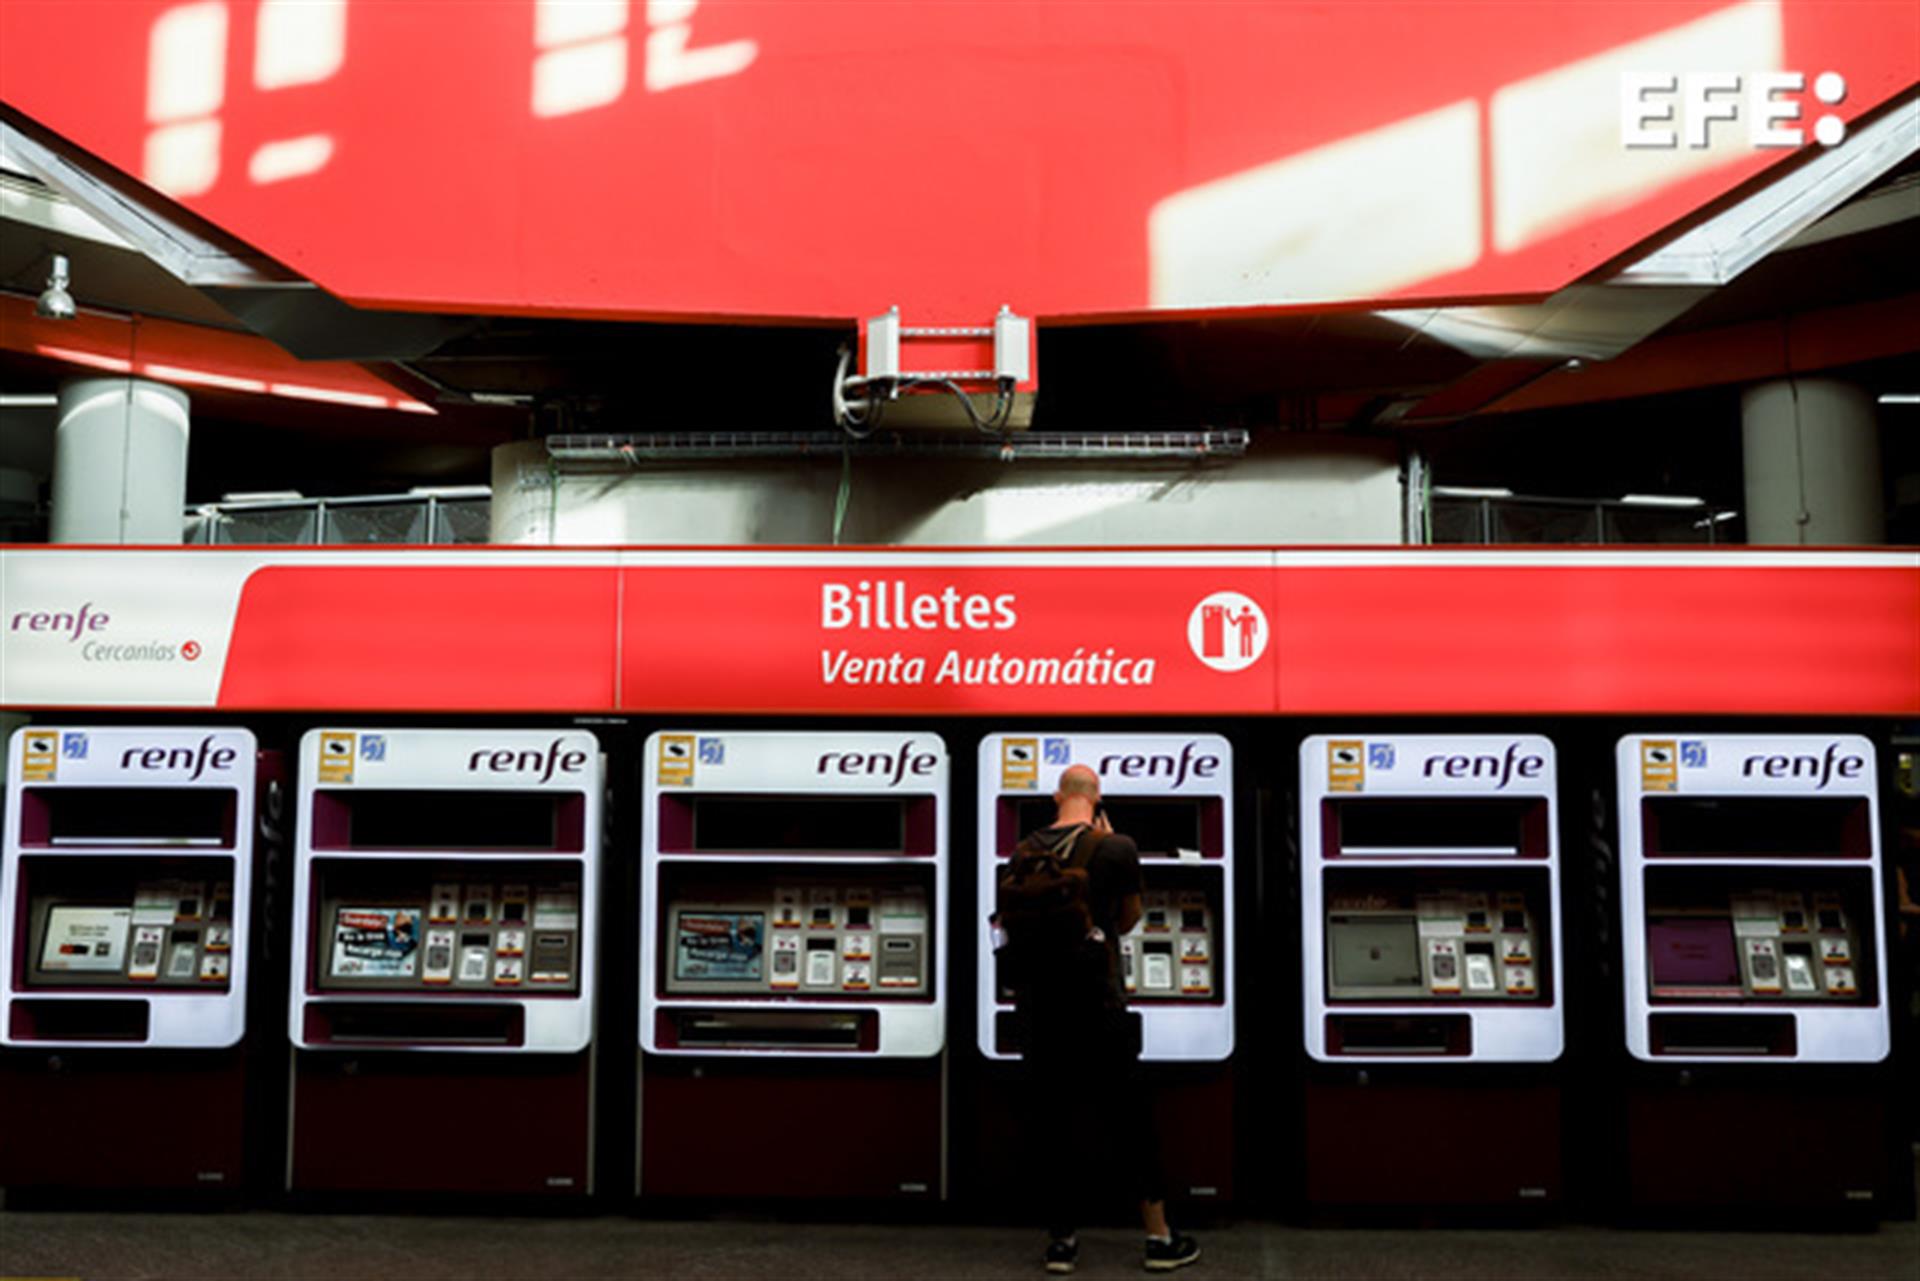 Viajeros gestionan la compra de sus abonos en máquinas expendedoras de billetes en una estación de Cercanías. EFE/Archivo